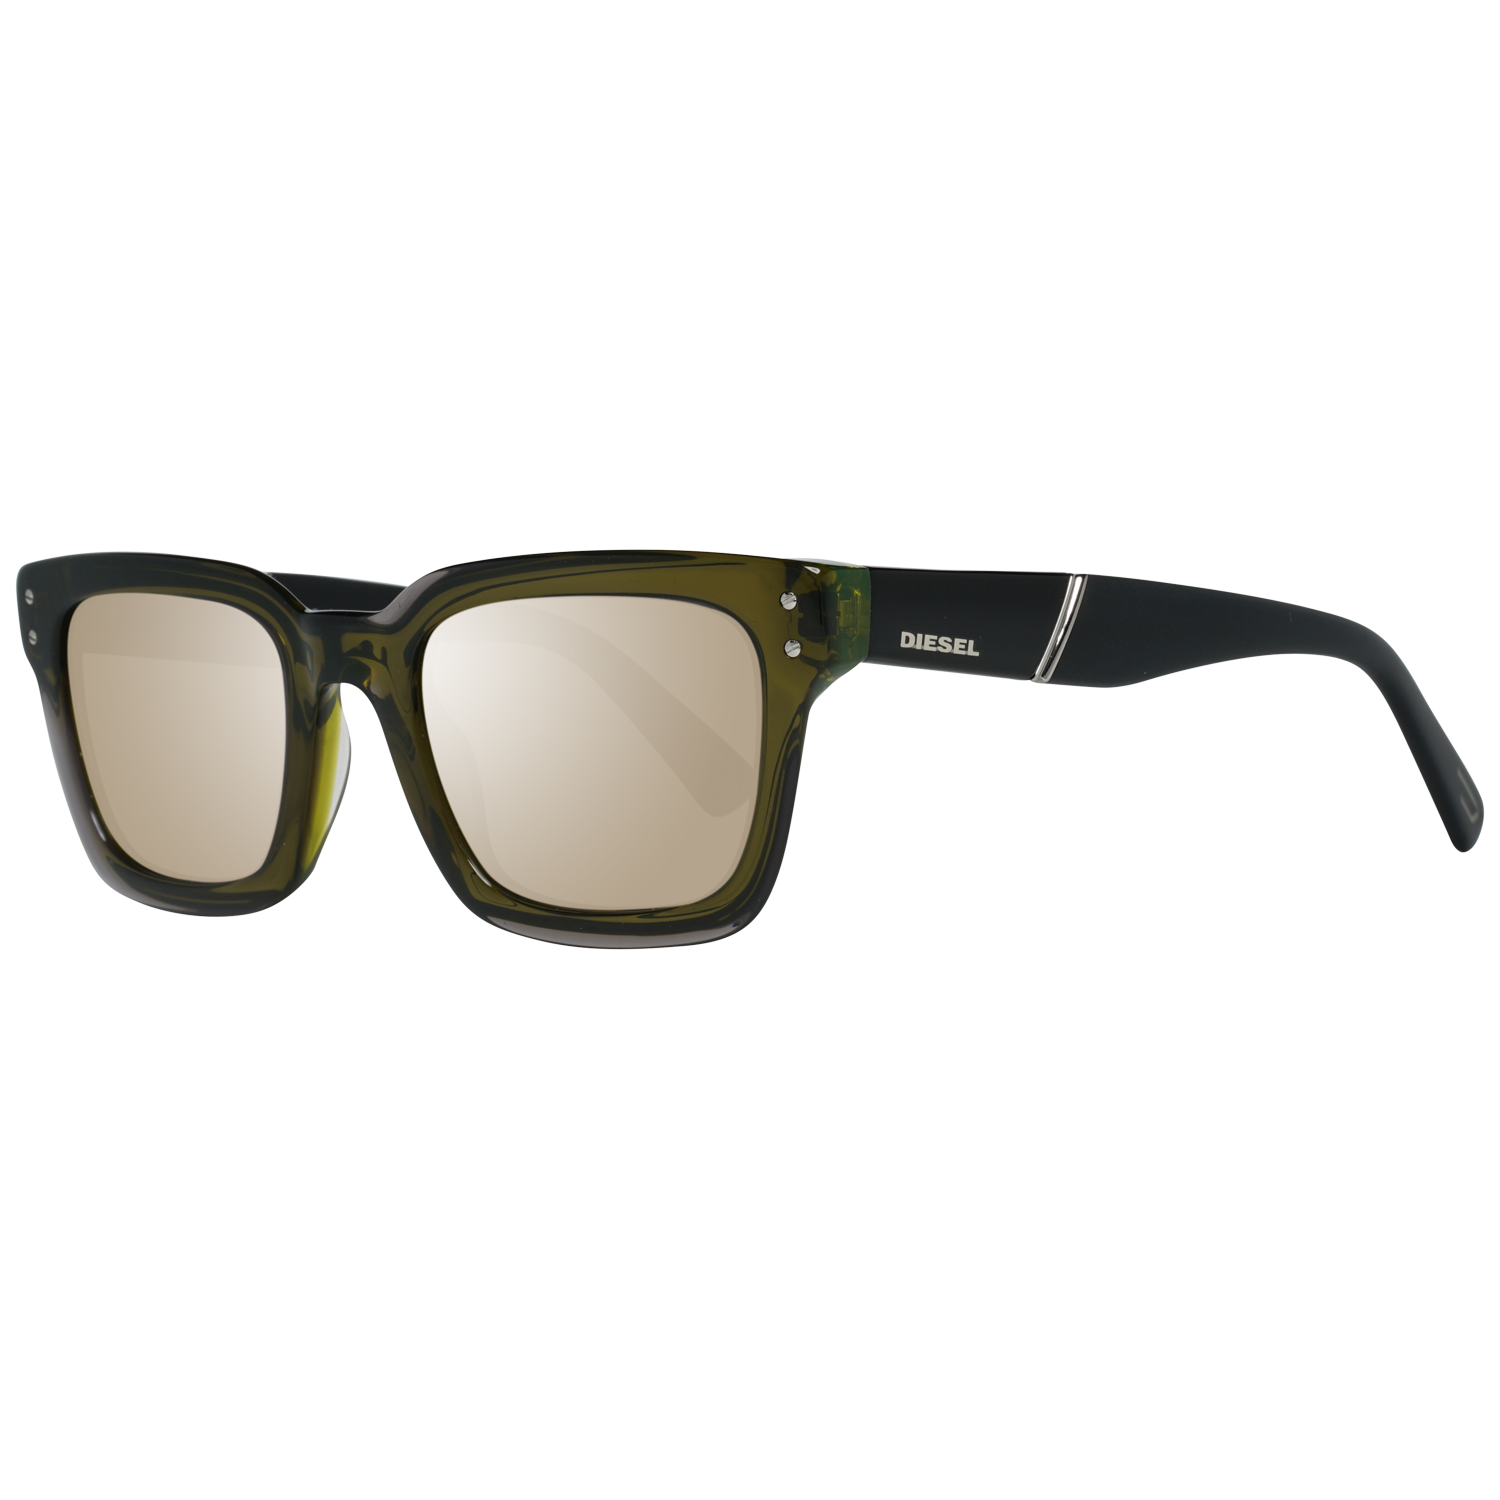 Diesel Sunglasses DL0231 95Q 51